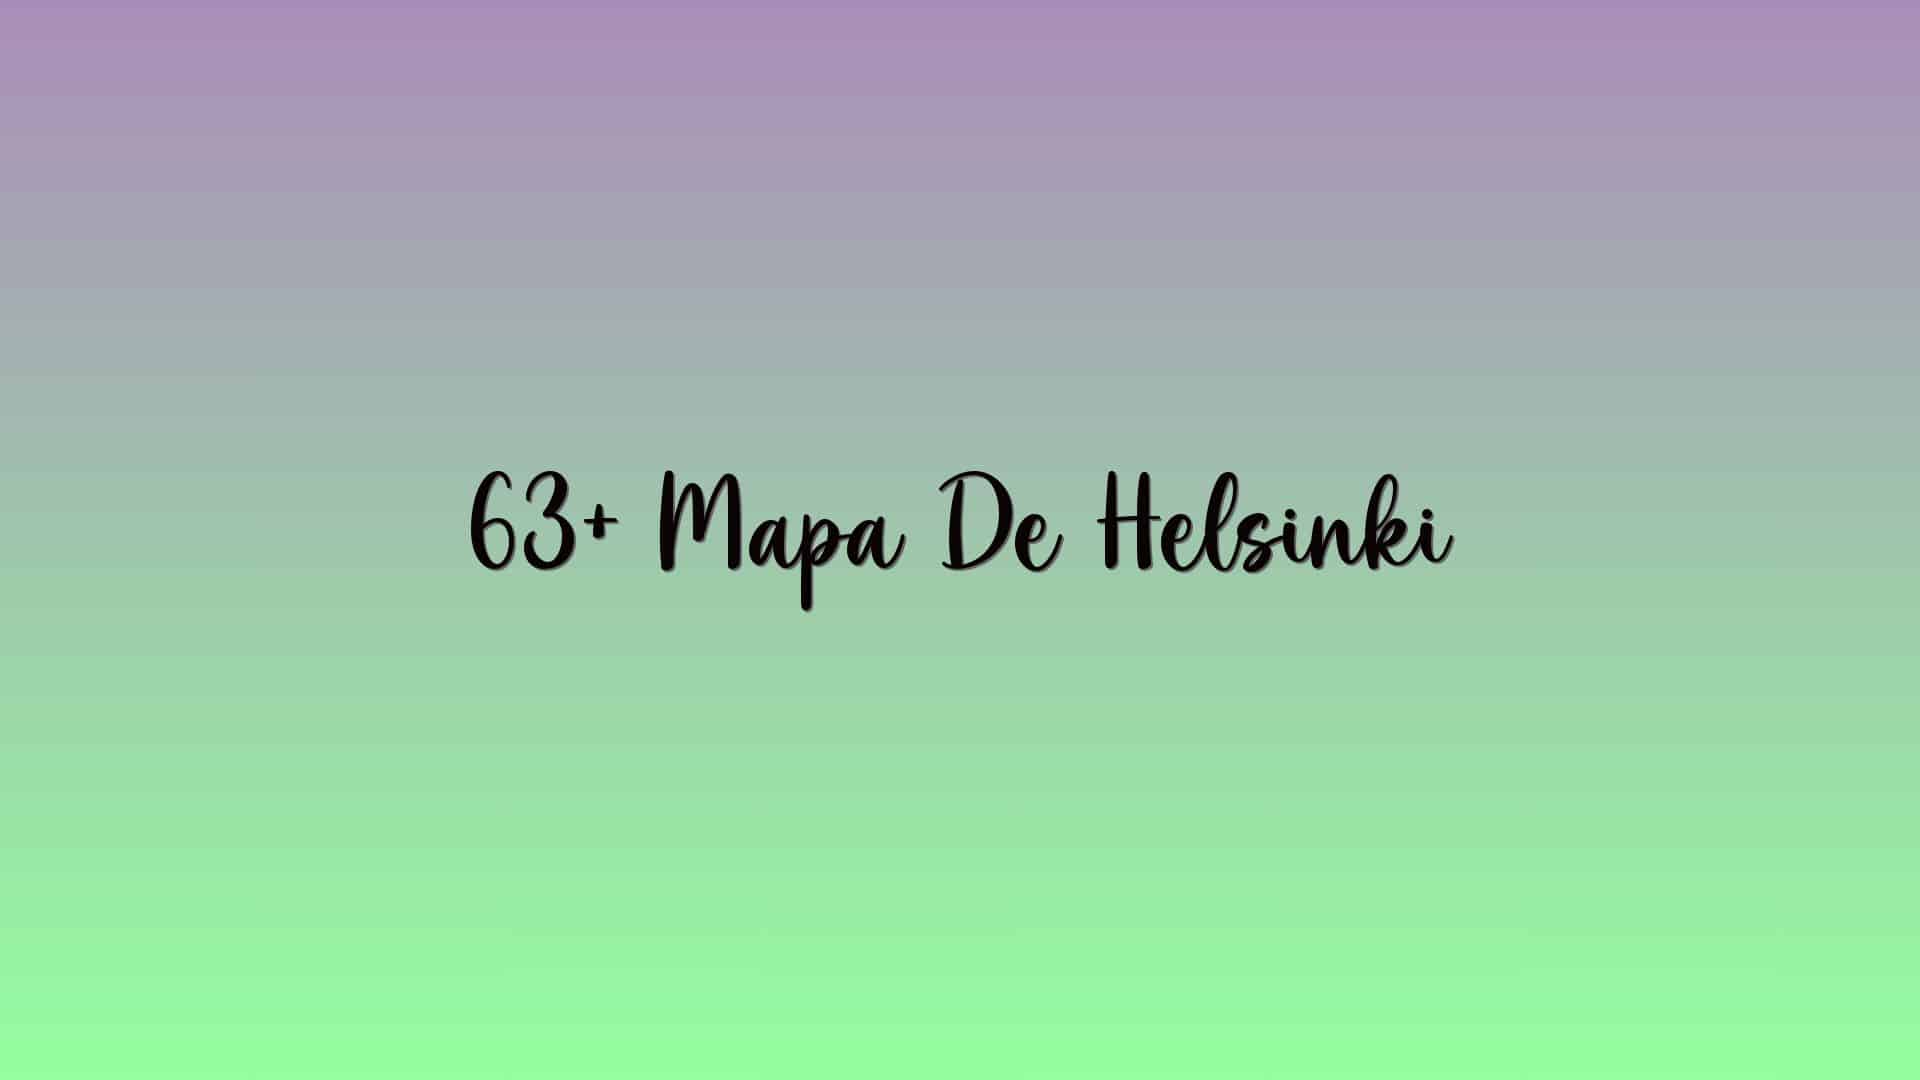 63+ Mapa De Helsinki